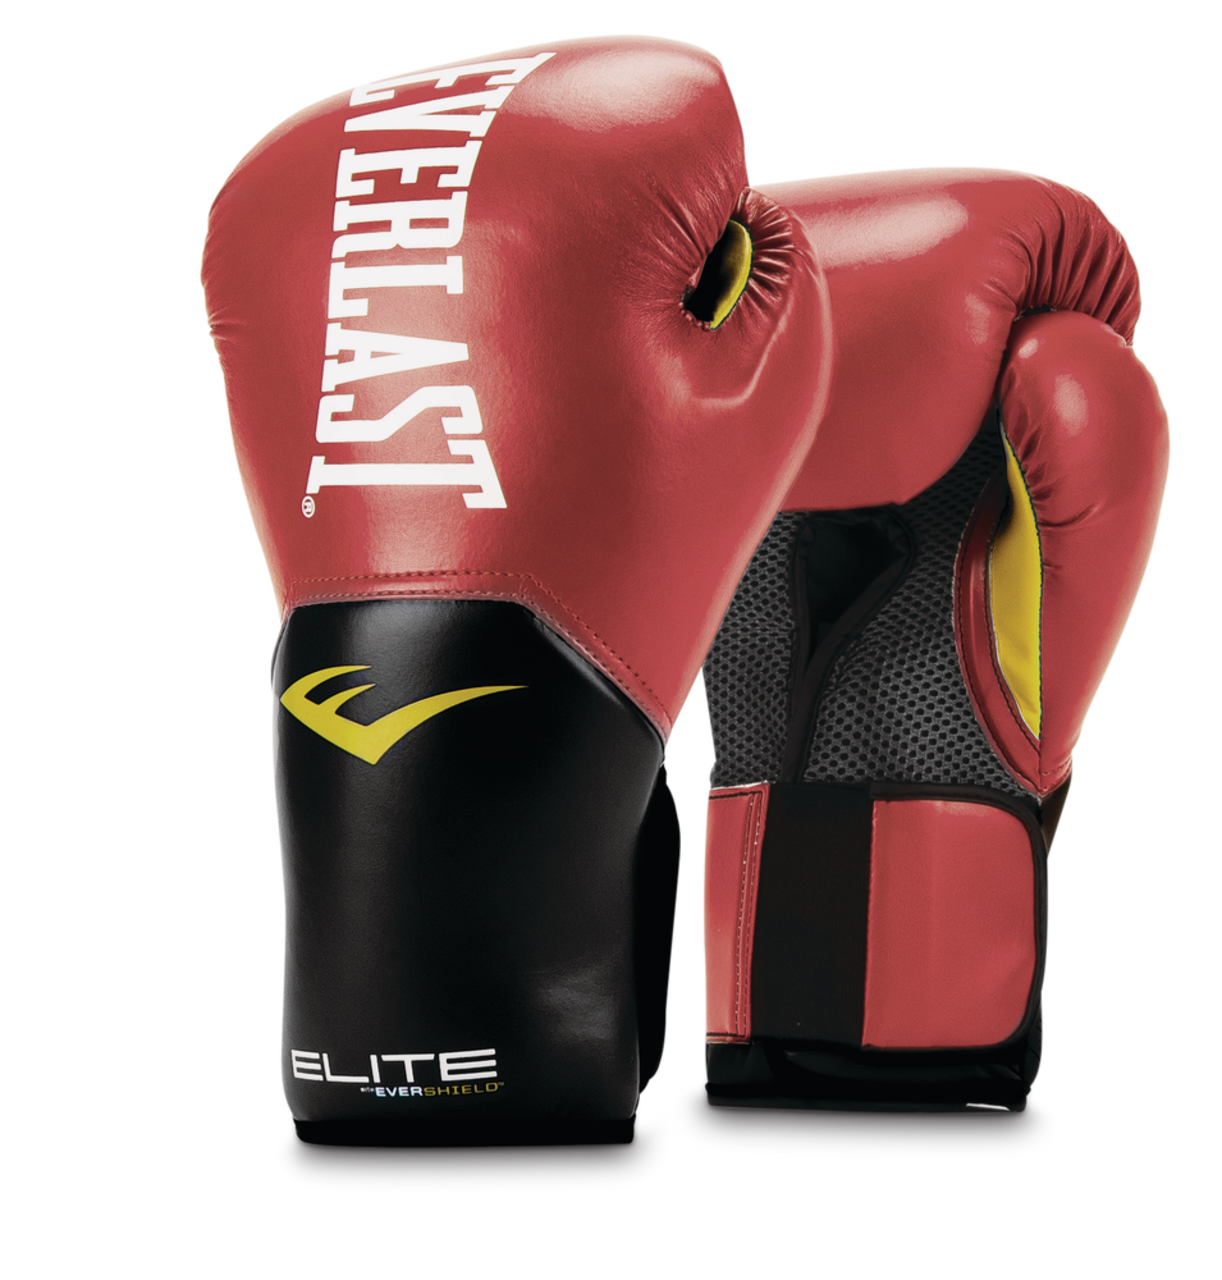 Everlast Elite 2.0 Boxing Gloves, Red, 14-oz